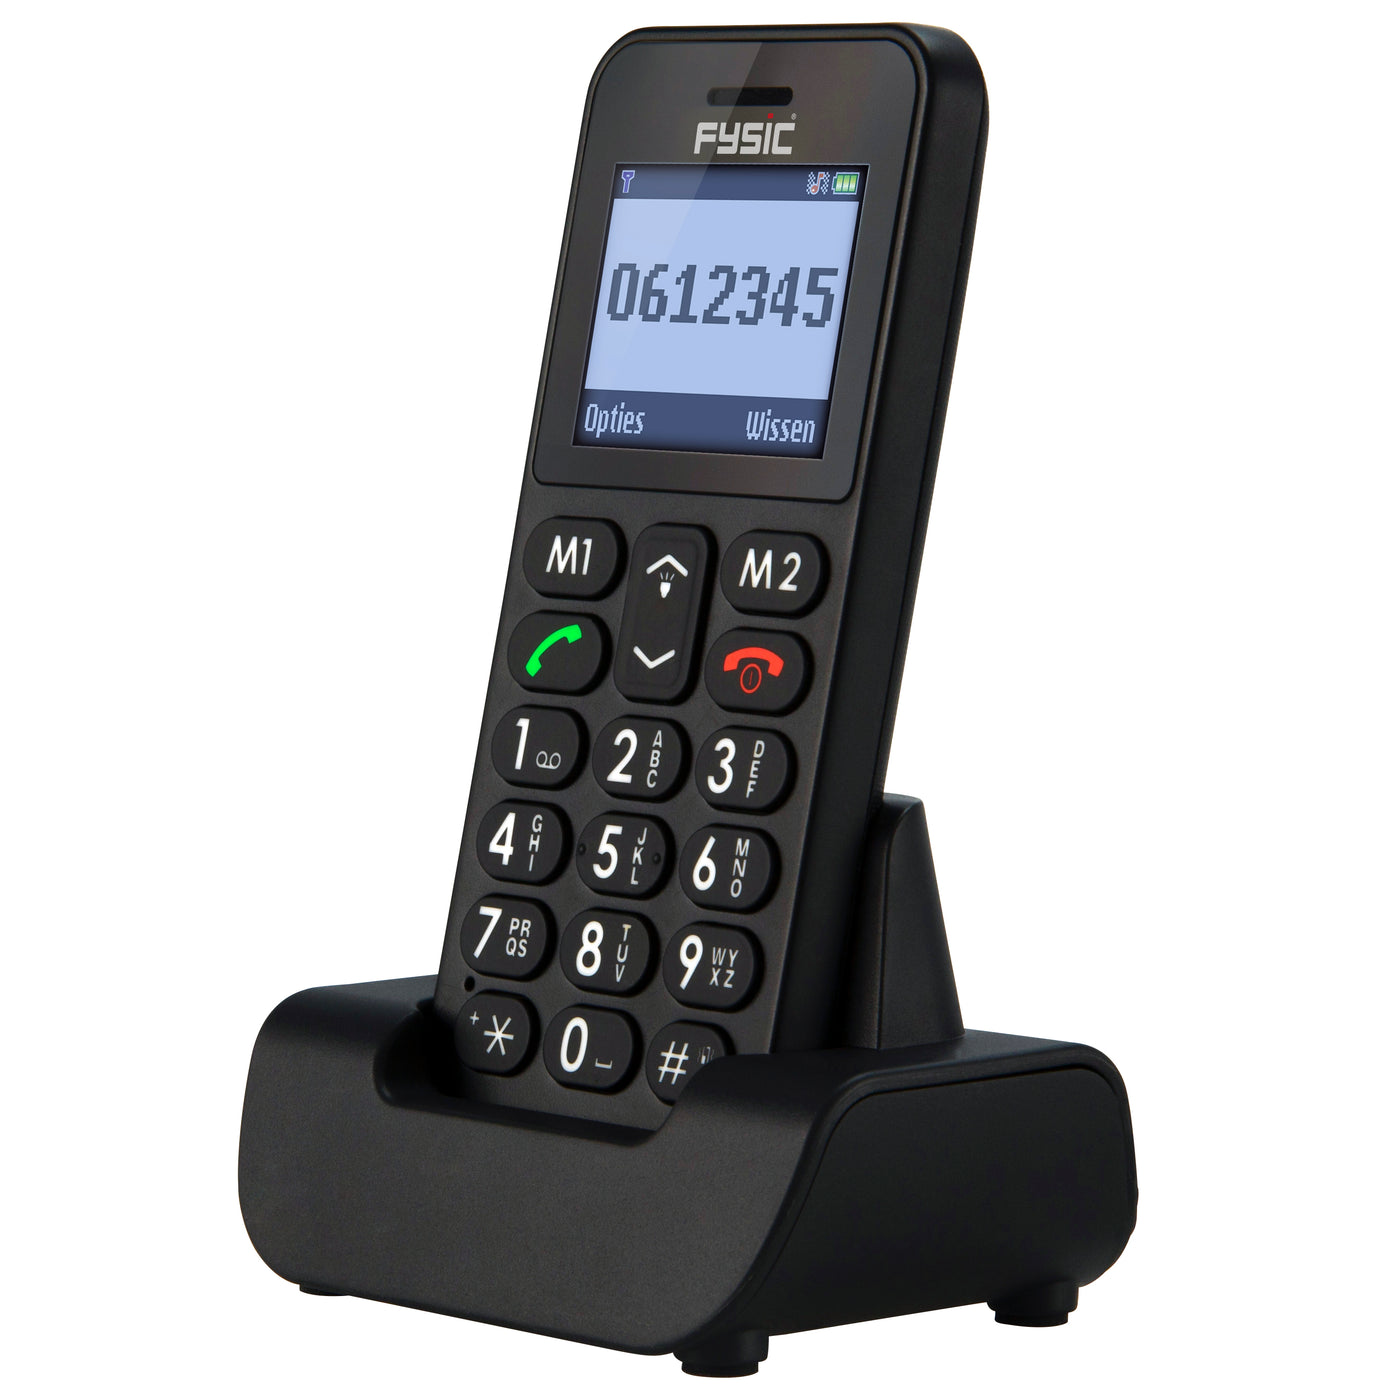 Fysic FM-6700 - Eenvoudige mobiele telefoon voor senioren met SOS paniekknop, zwart